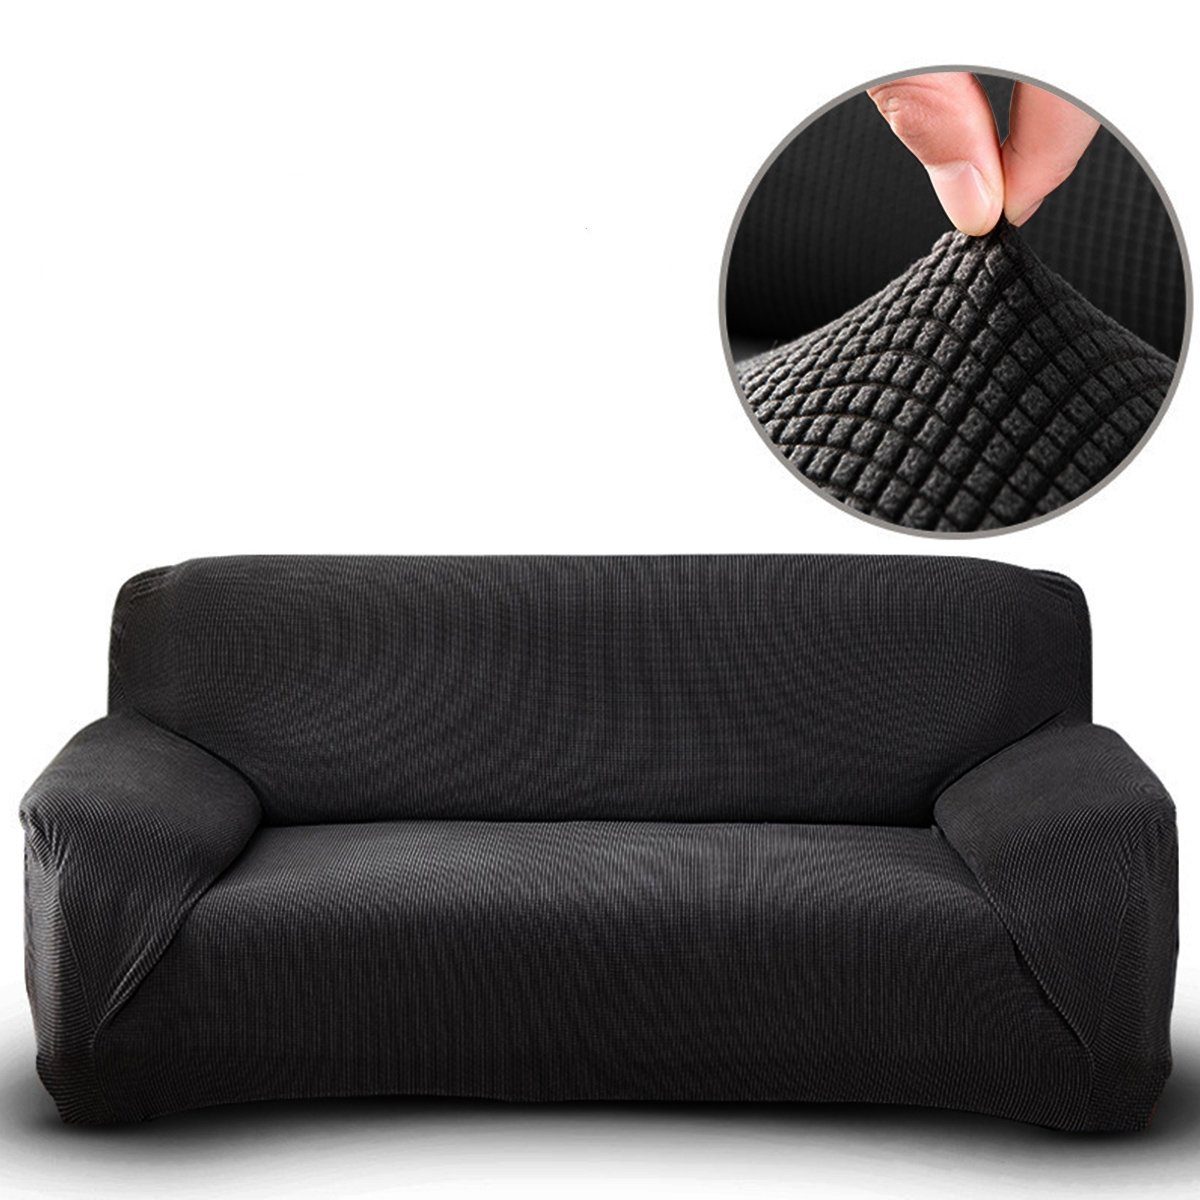 Sofahusse Stretch-Sofabezug Elastisch Couch Sesselbezug mit dezentem Muster, MULISOFT, mit elastischem Bund, rutschfesten Schaumstoffstreifen Schwarz